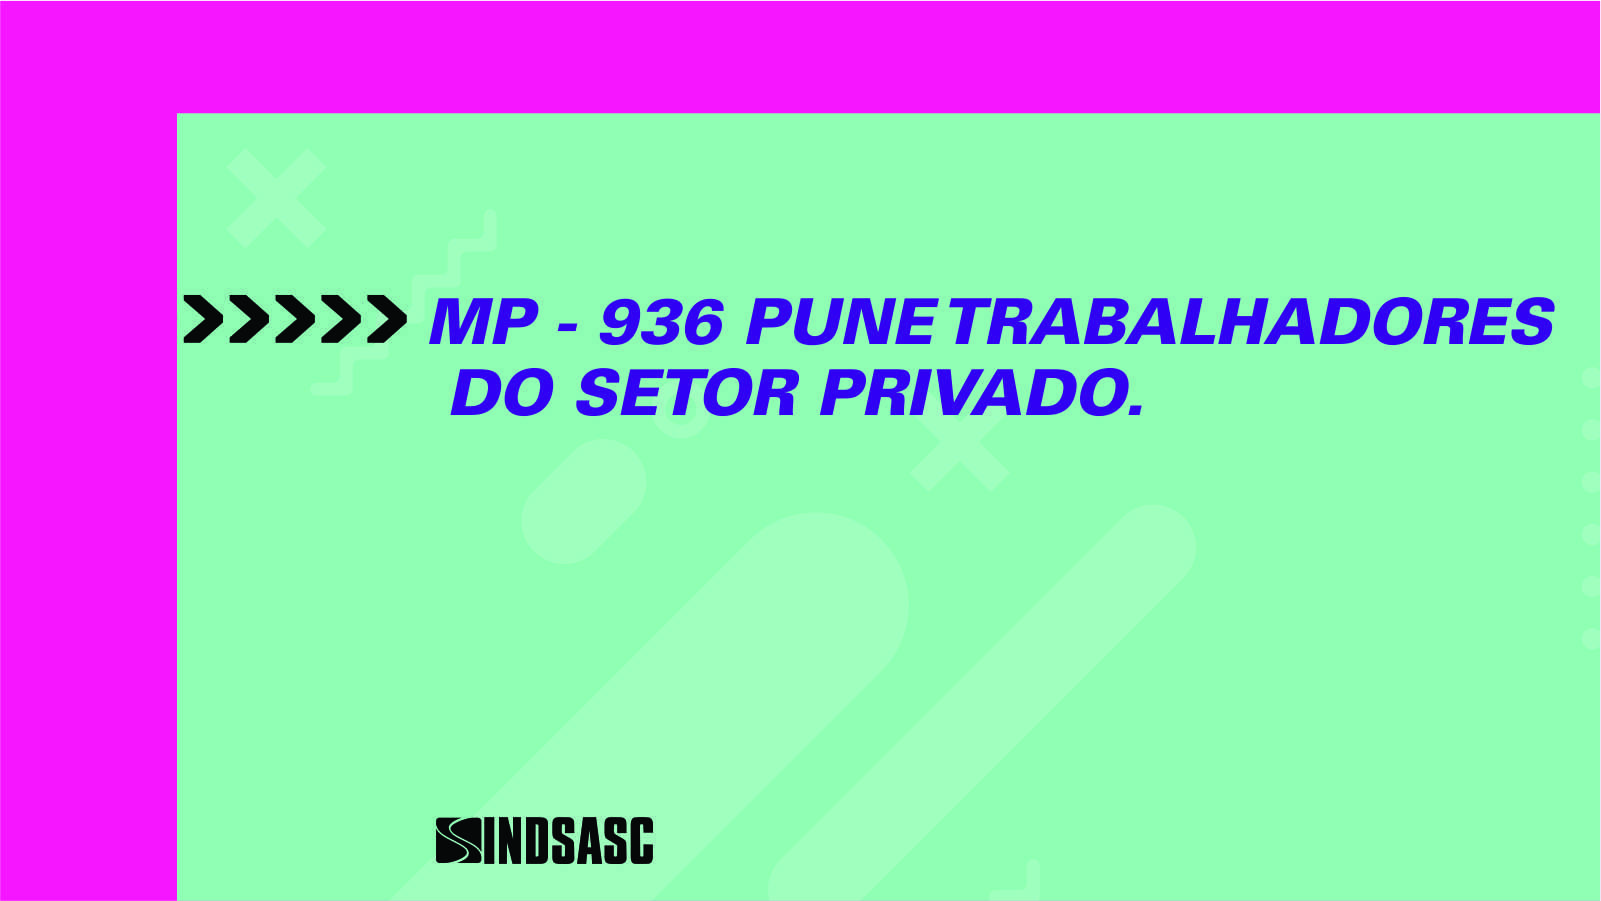 MP-936 PUNE TRABALHADORES DO SETOR PRIVADO